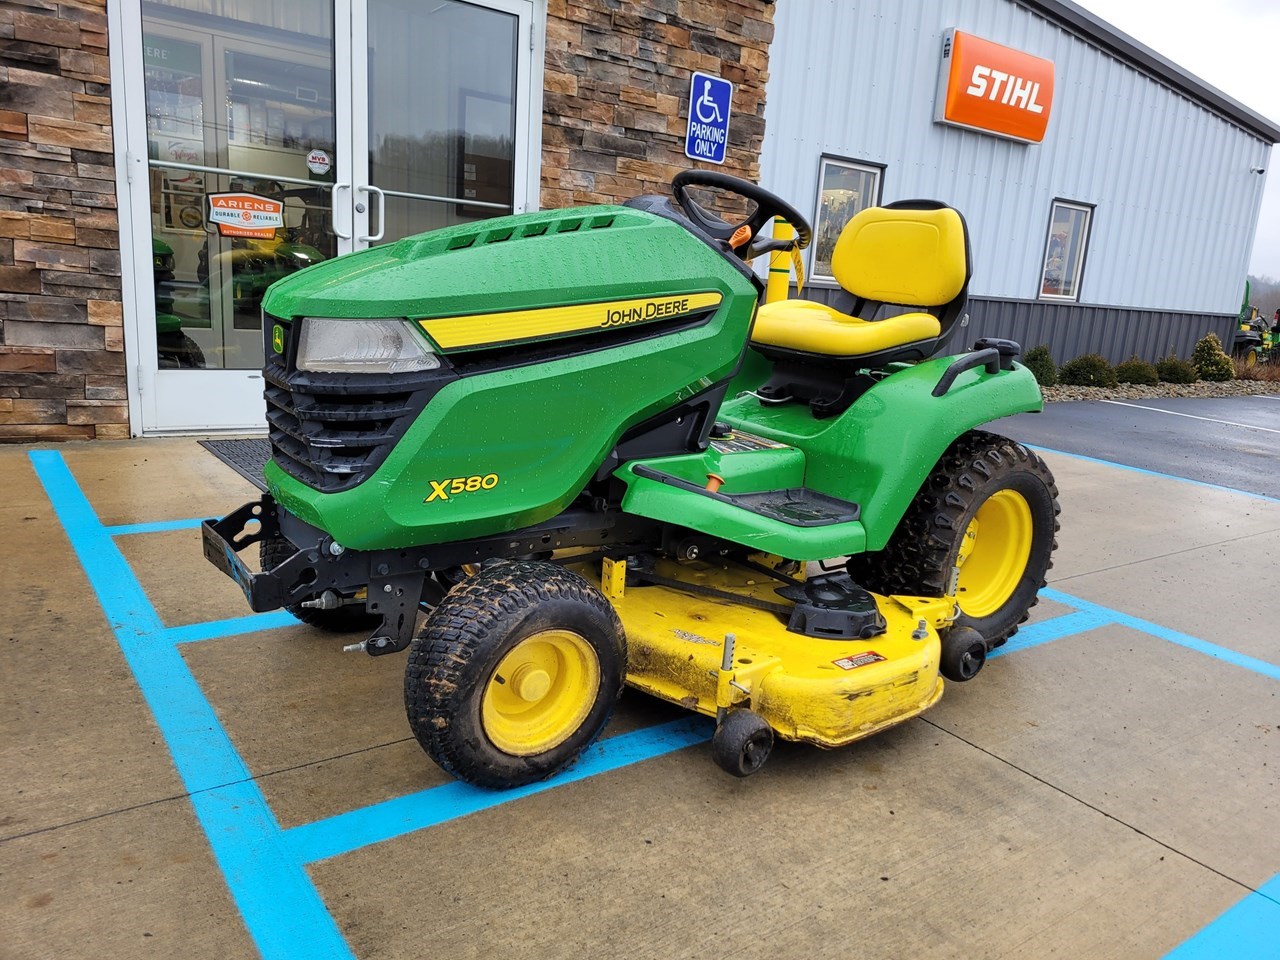 2019 John Deere X580 Lawn Mower For Sale